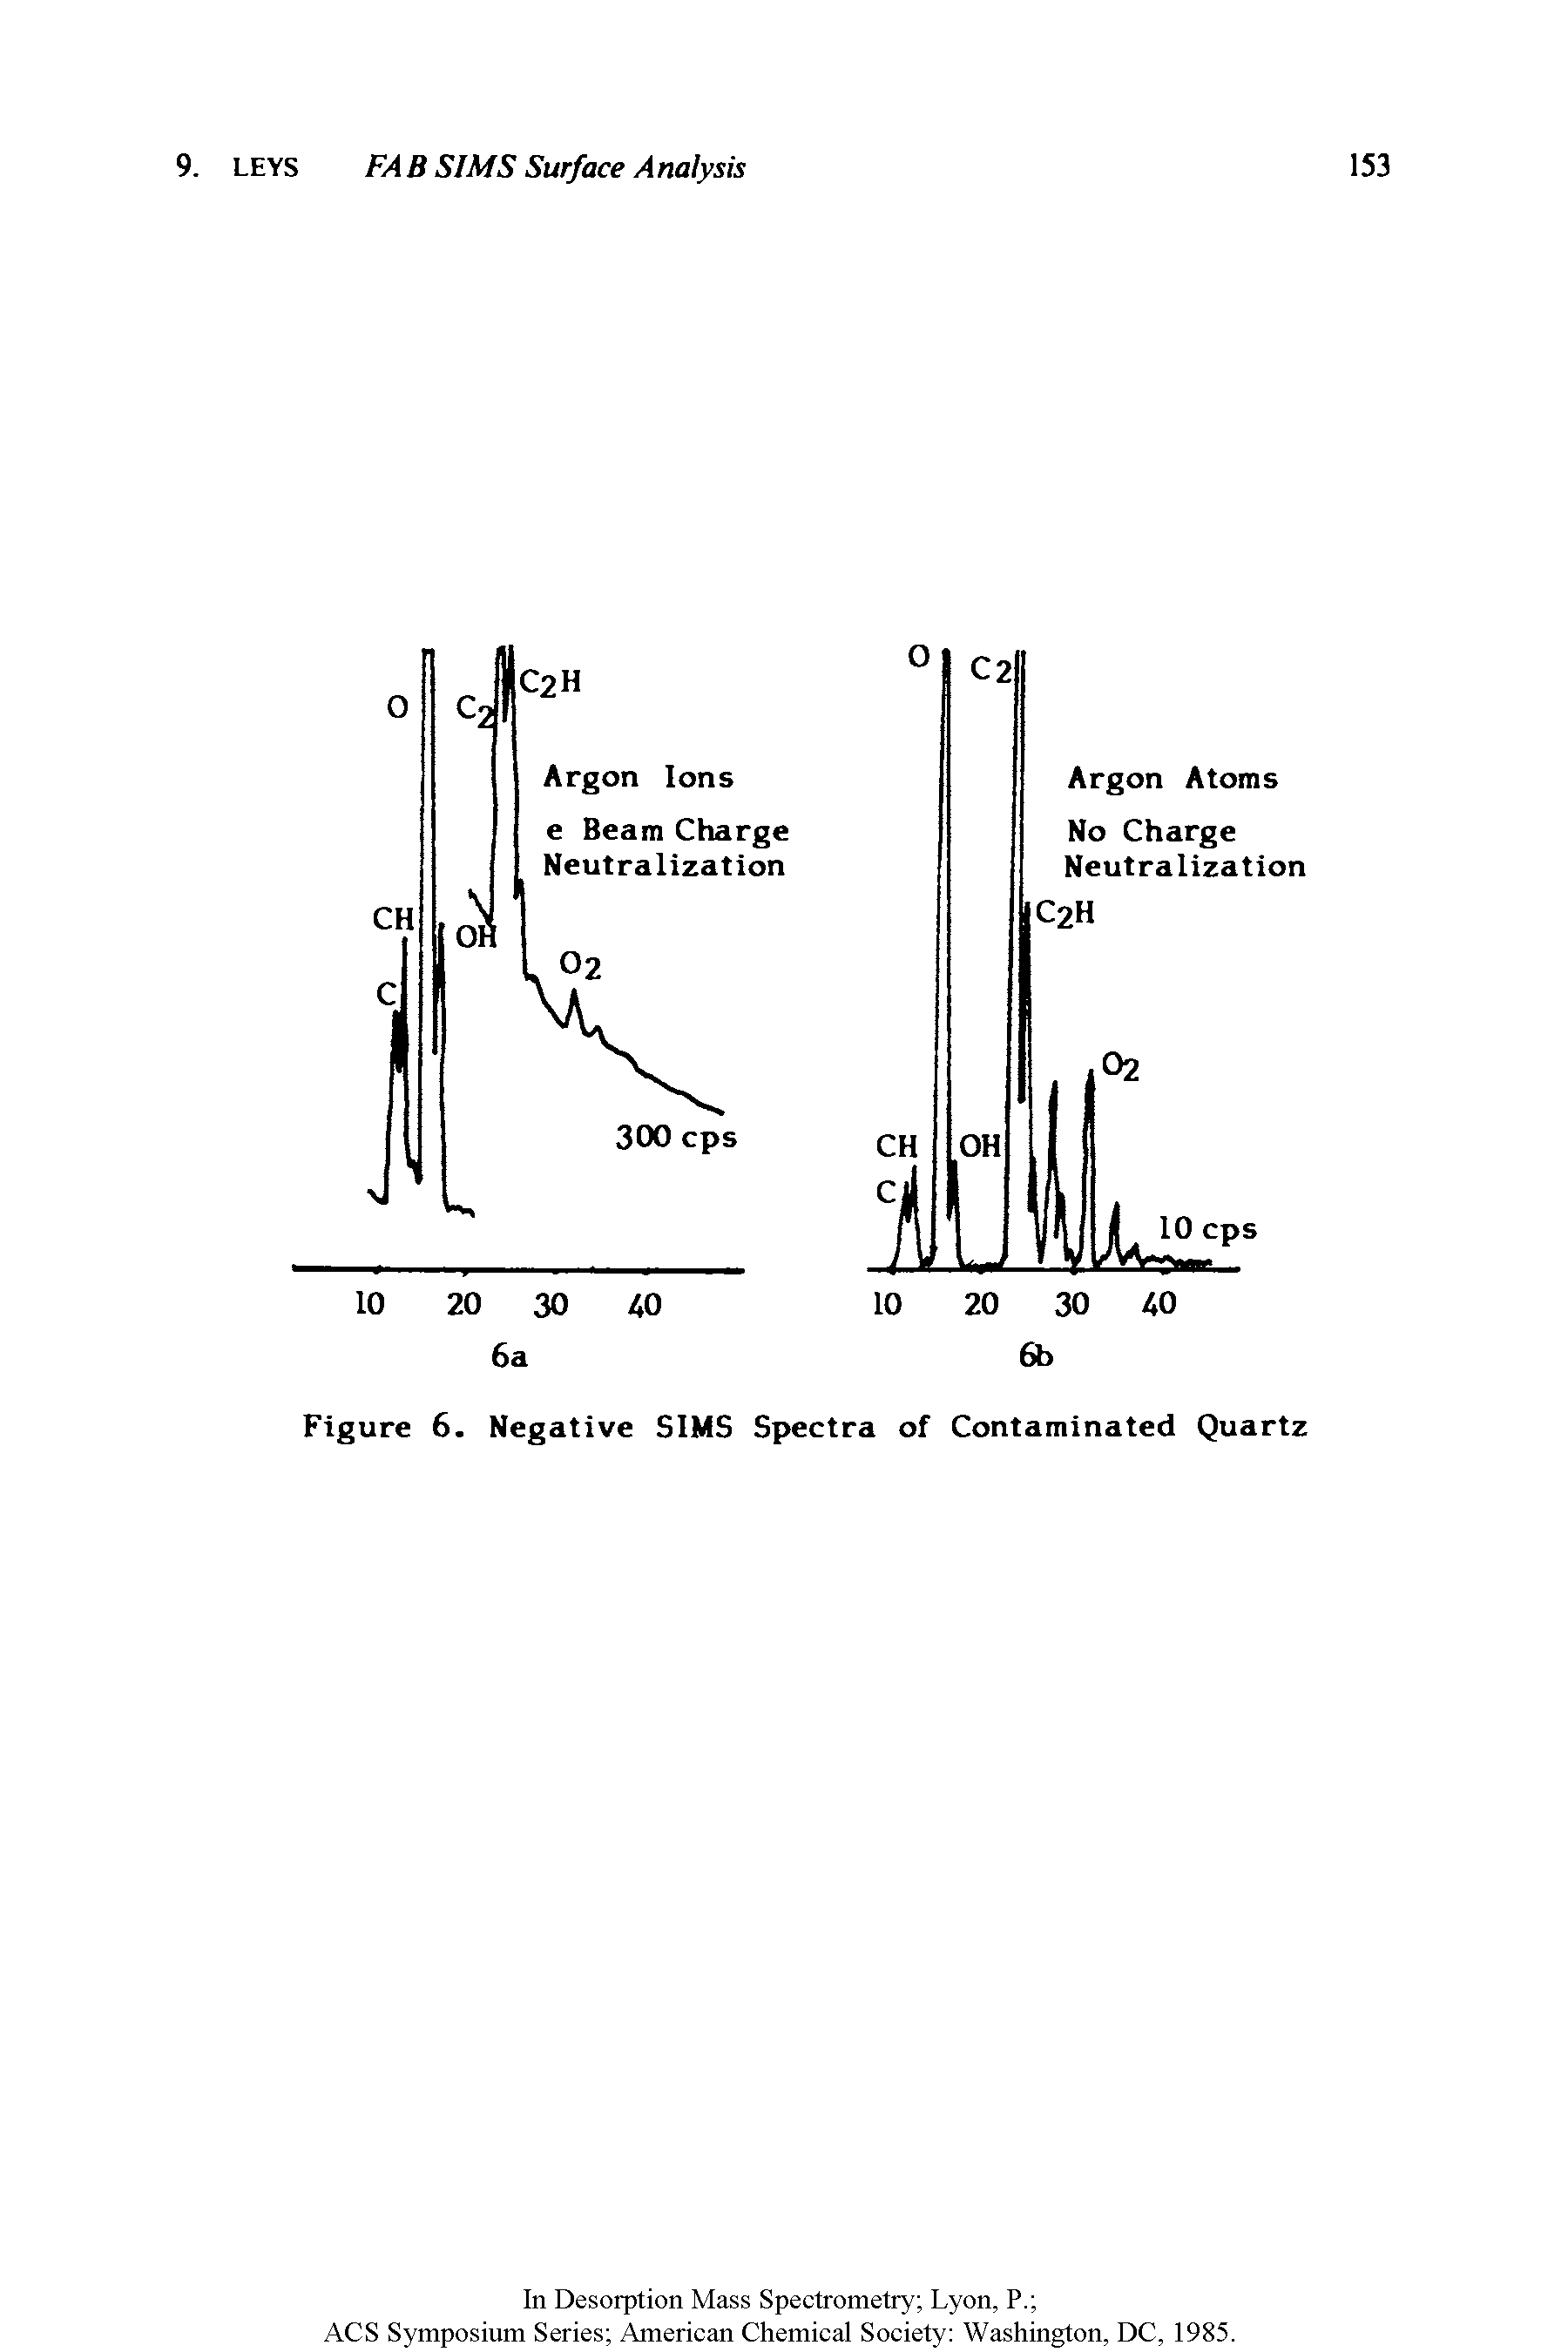 Figure 6. Negative SIMS Spectra of Contaminated Quartz...